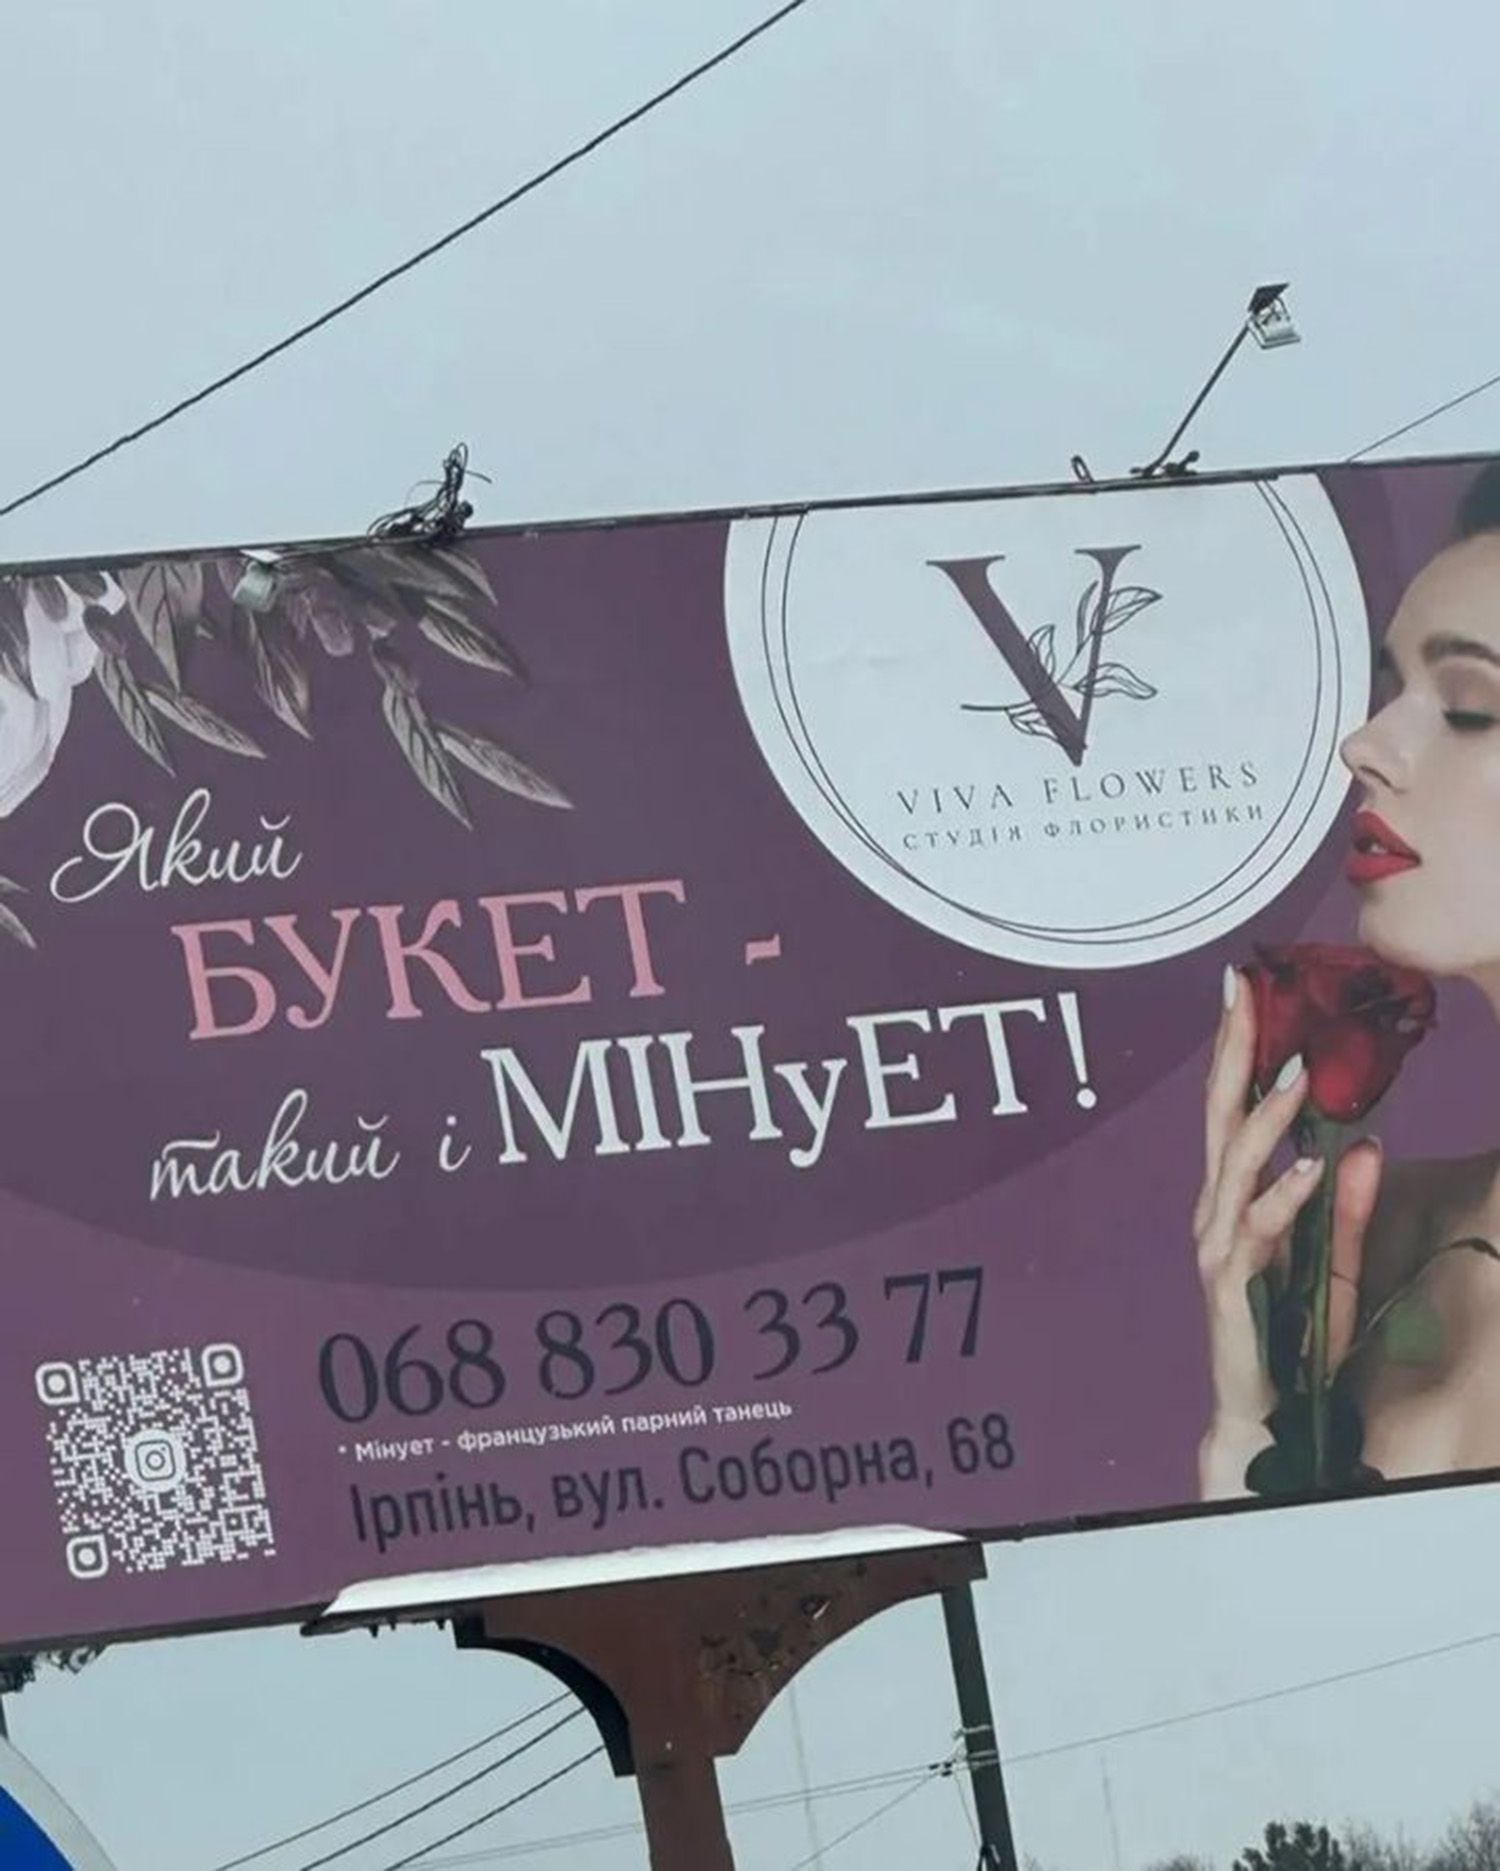 "Какой букет – таков и МИЭуЭТ": в Киевской области возник скандал из-за сексистской рекламы на билборде - 24 Канал